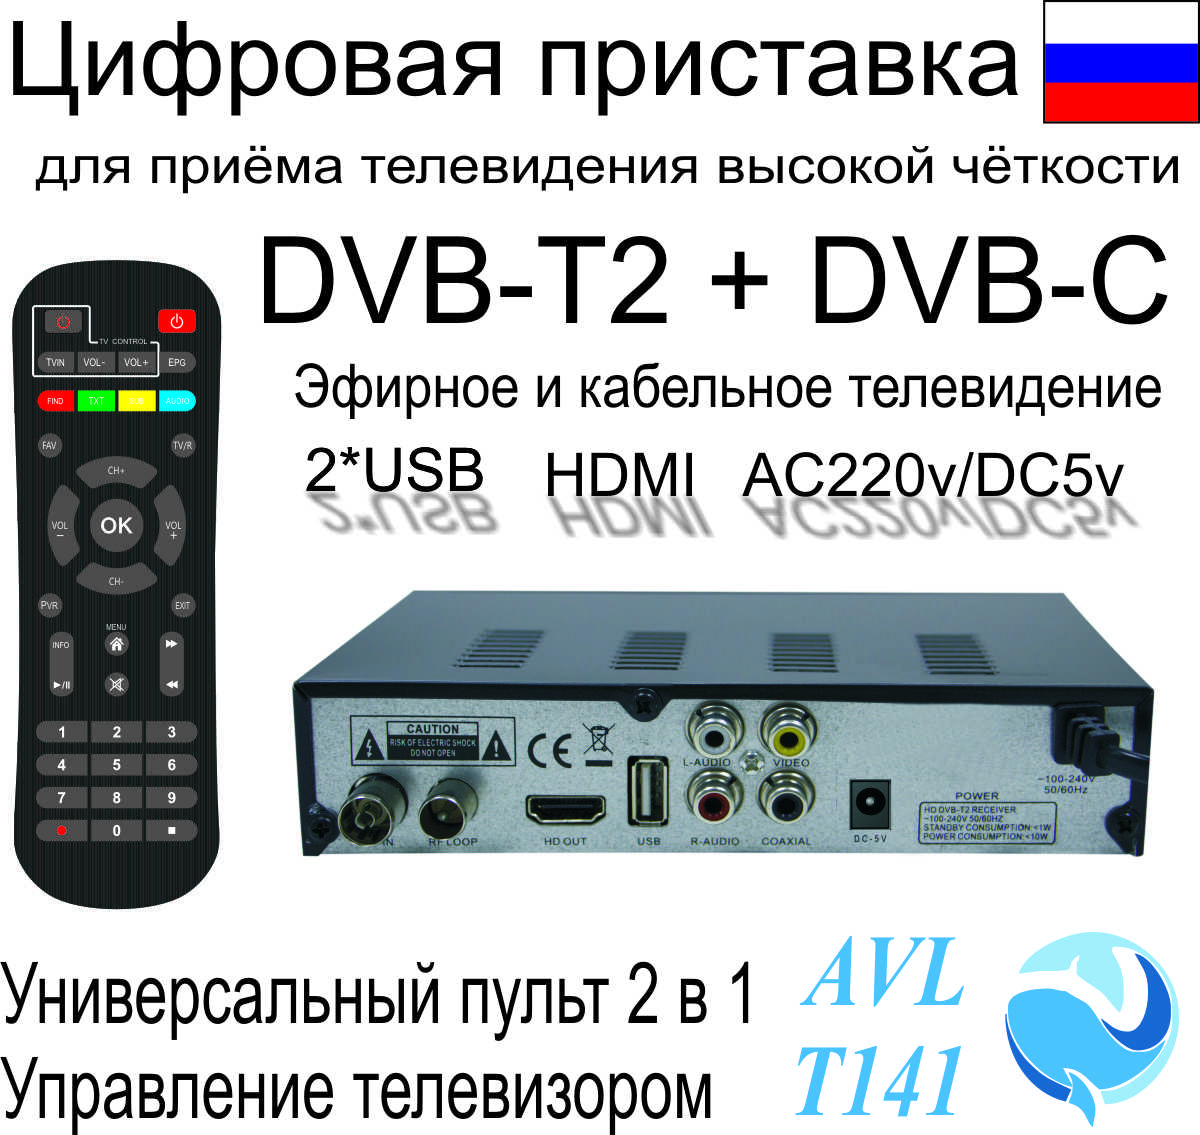 Кабельные приставки к телевизору. Цифровая приставка AVL t141. Приставка цифровая DVB-t2 OTAU t6000.